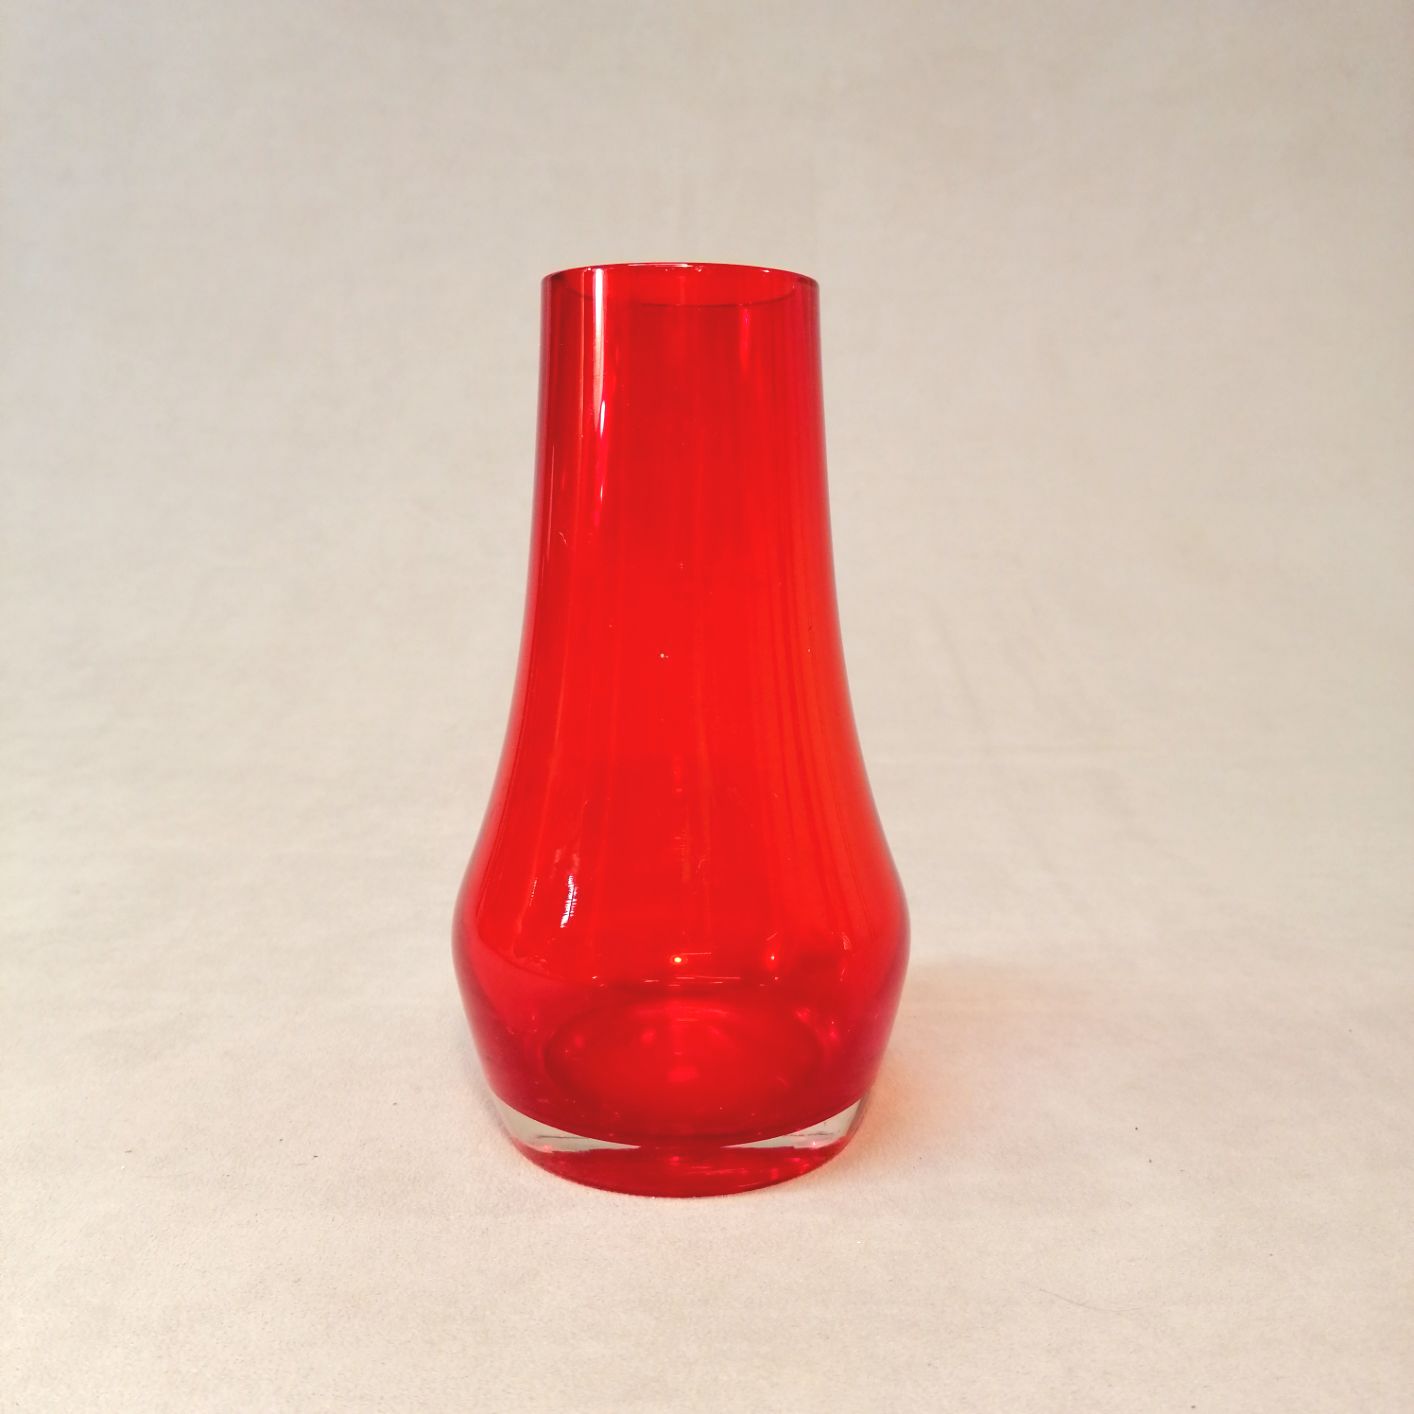 Riihimäen Lasi punainen maljakko korkeus 18cm valm. 60-luku suunnittelija Tamara Aladin hinta 65eur.